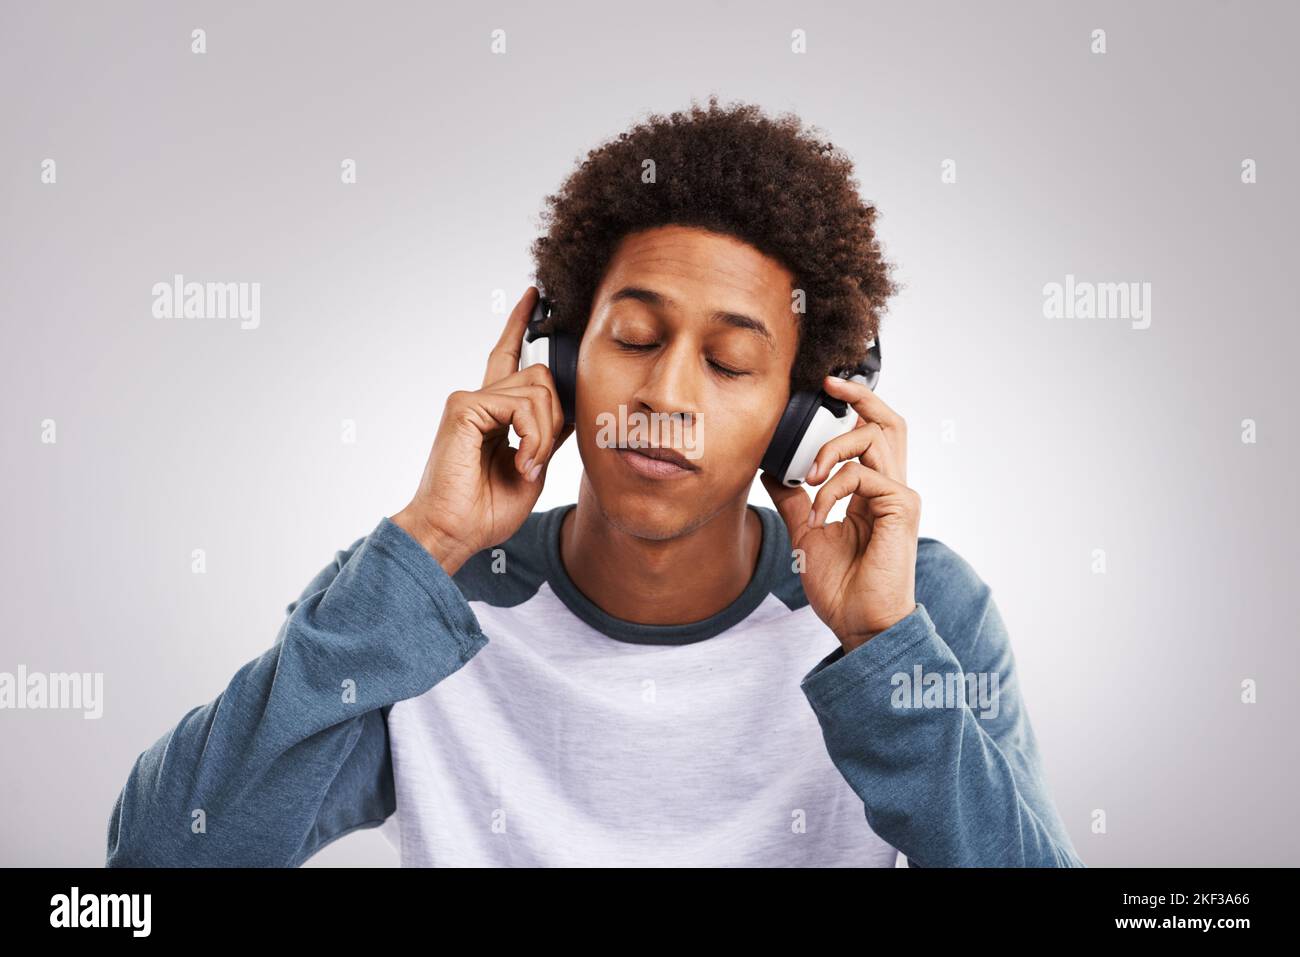 Bajo la influencia de la buena música. Estudio de un joven escuchando música con sus auriculares sobre un fondo gris. Foto de stock